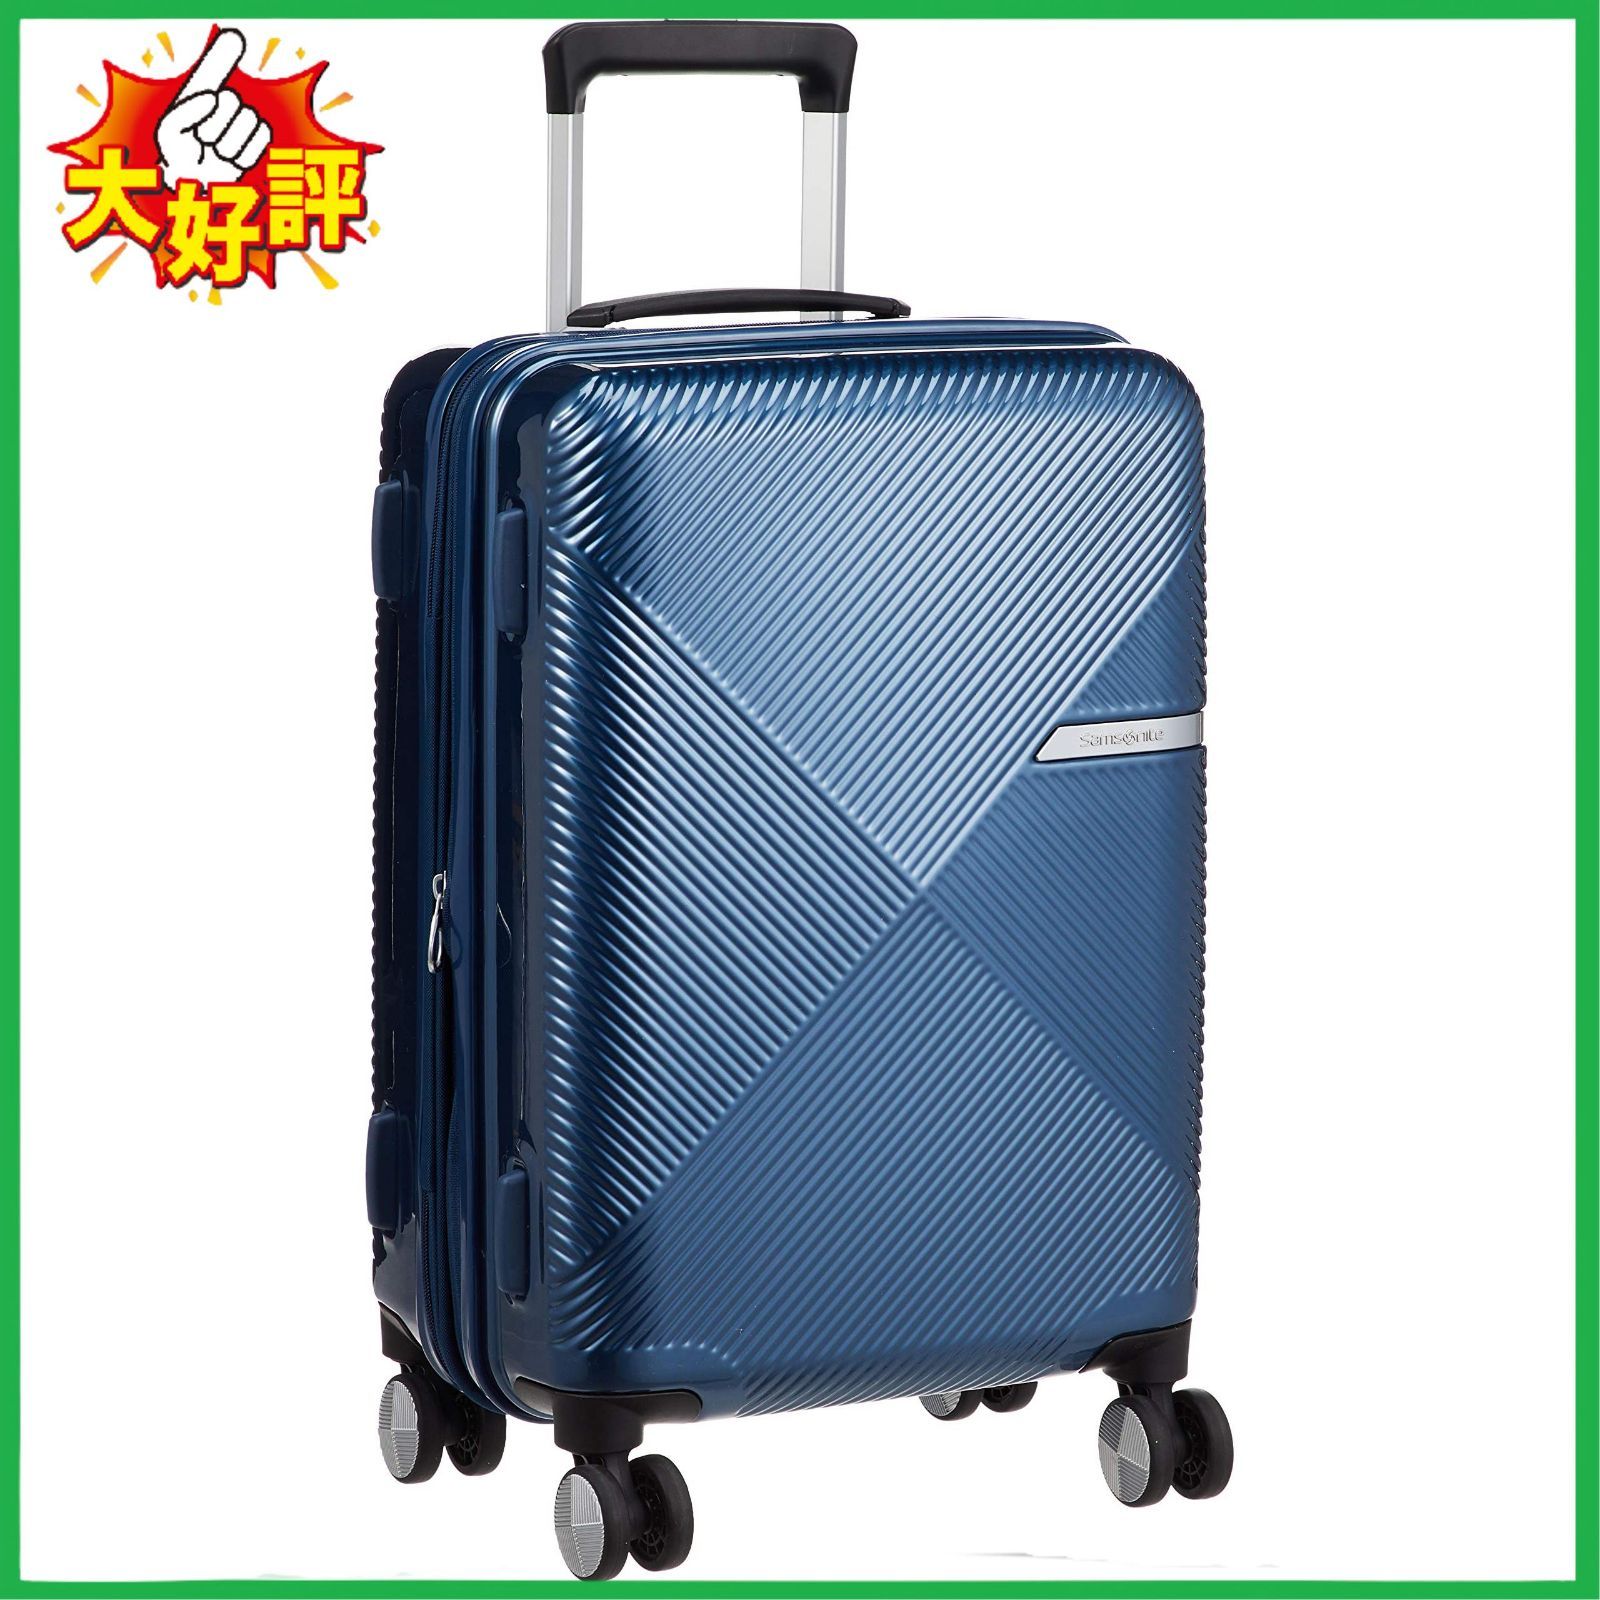 □サムソナイト スーツケース キャリーケース ヴォラント Volant スピナー55 36L 55 cm 2.9kg エキスパンダブル 機内持ち込み可